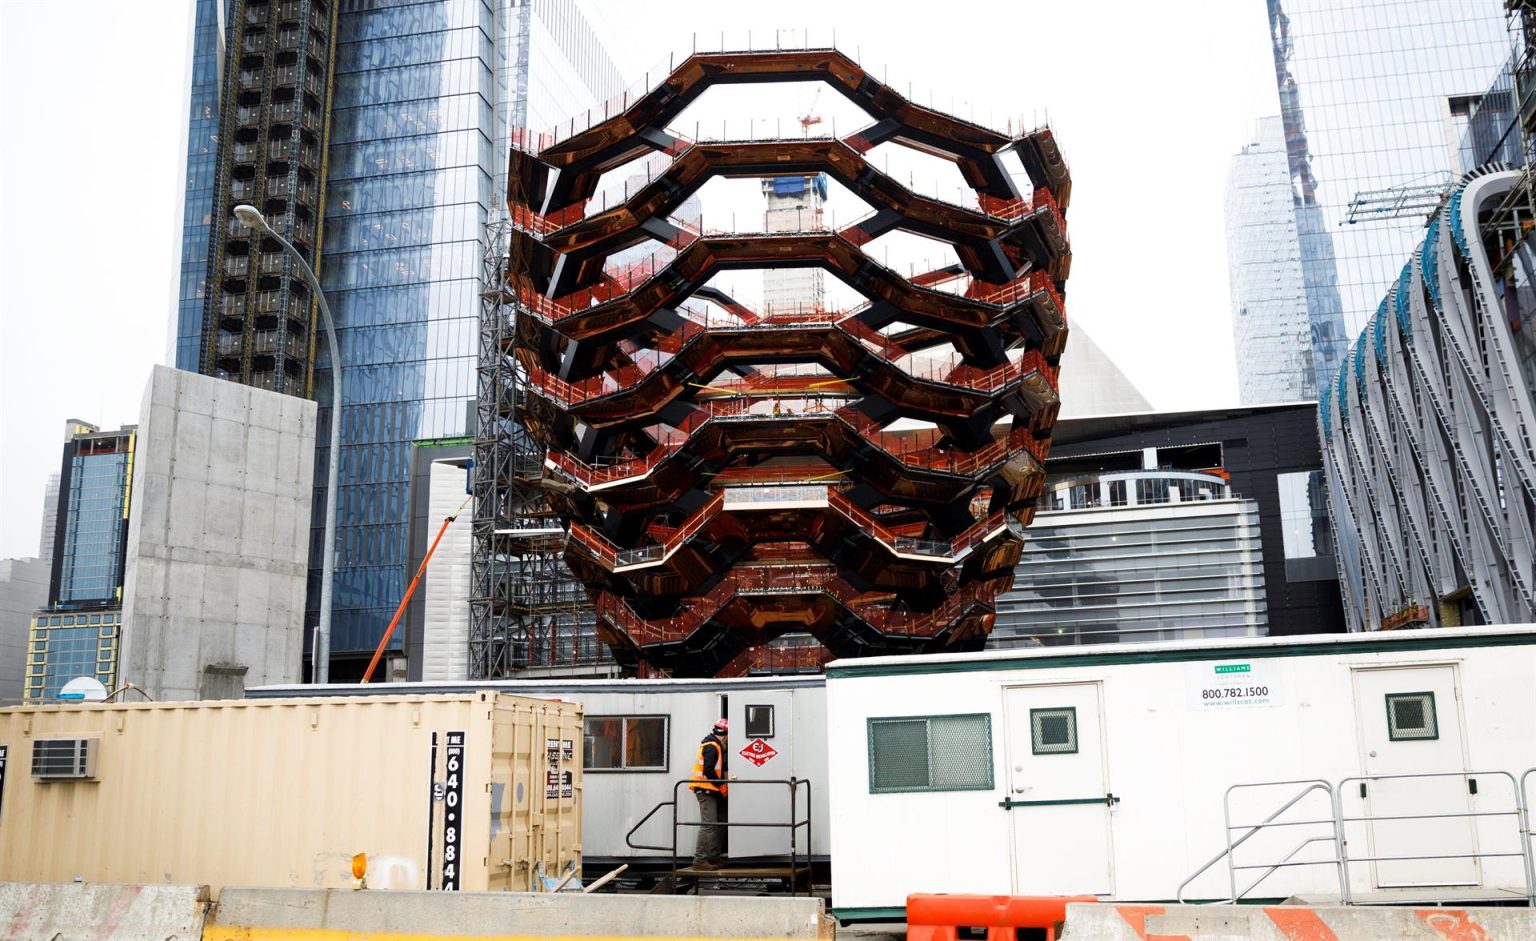 Vista de las labores de construcción del "Vessel", una estructura al aire libre de 15 pisos con forma de cesto en el centro de Hudson Yards, en Nueva York, Estados Unidos. Fotografía de archivo. EFE/ Justin Lane